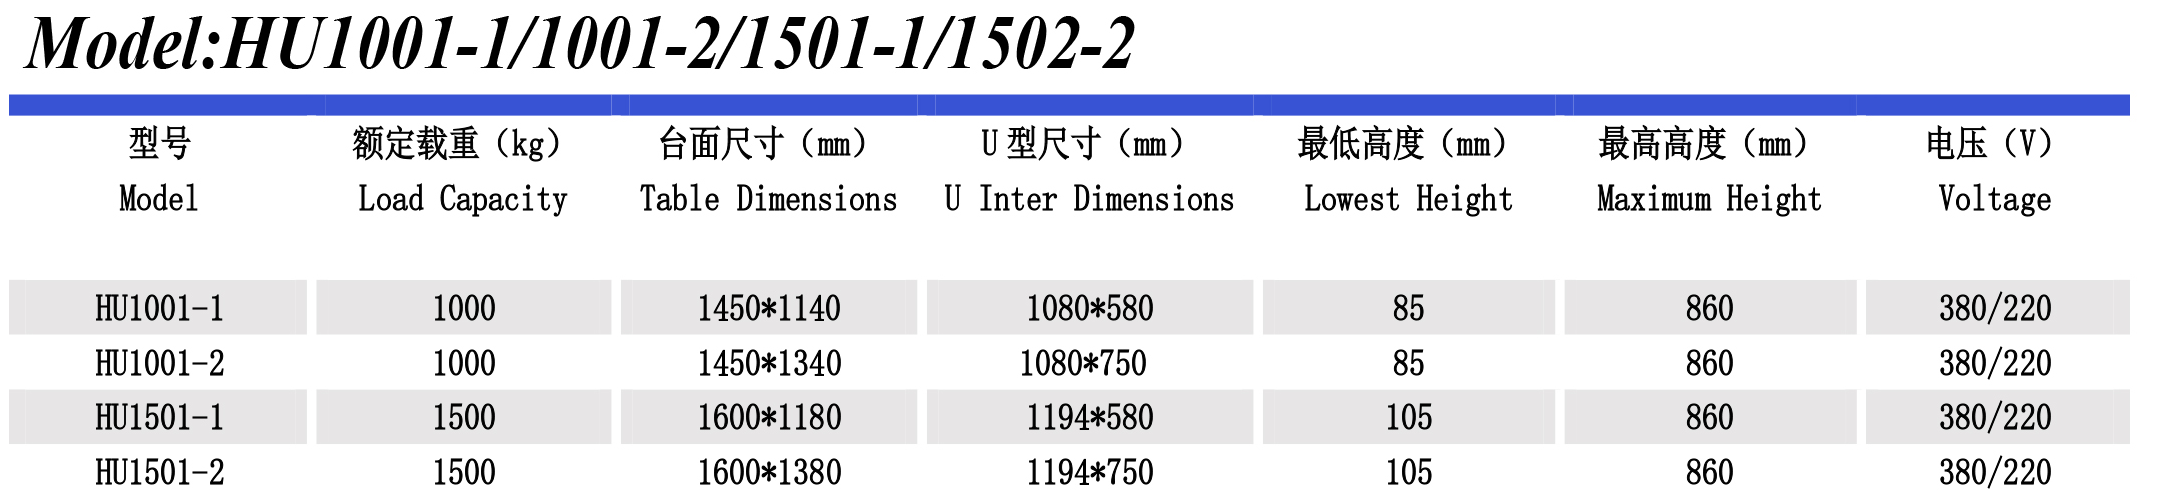 超低升降平台HU1501-2